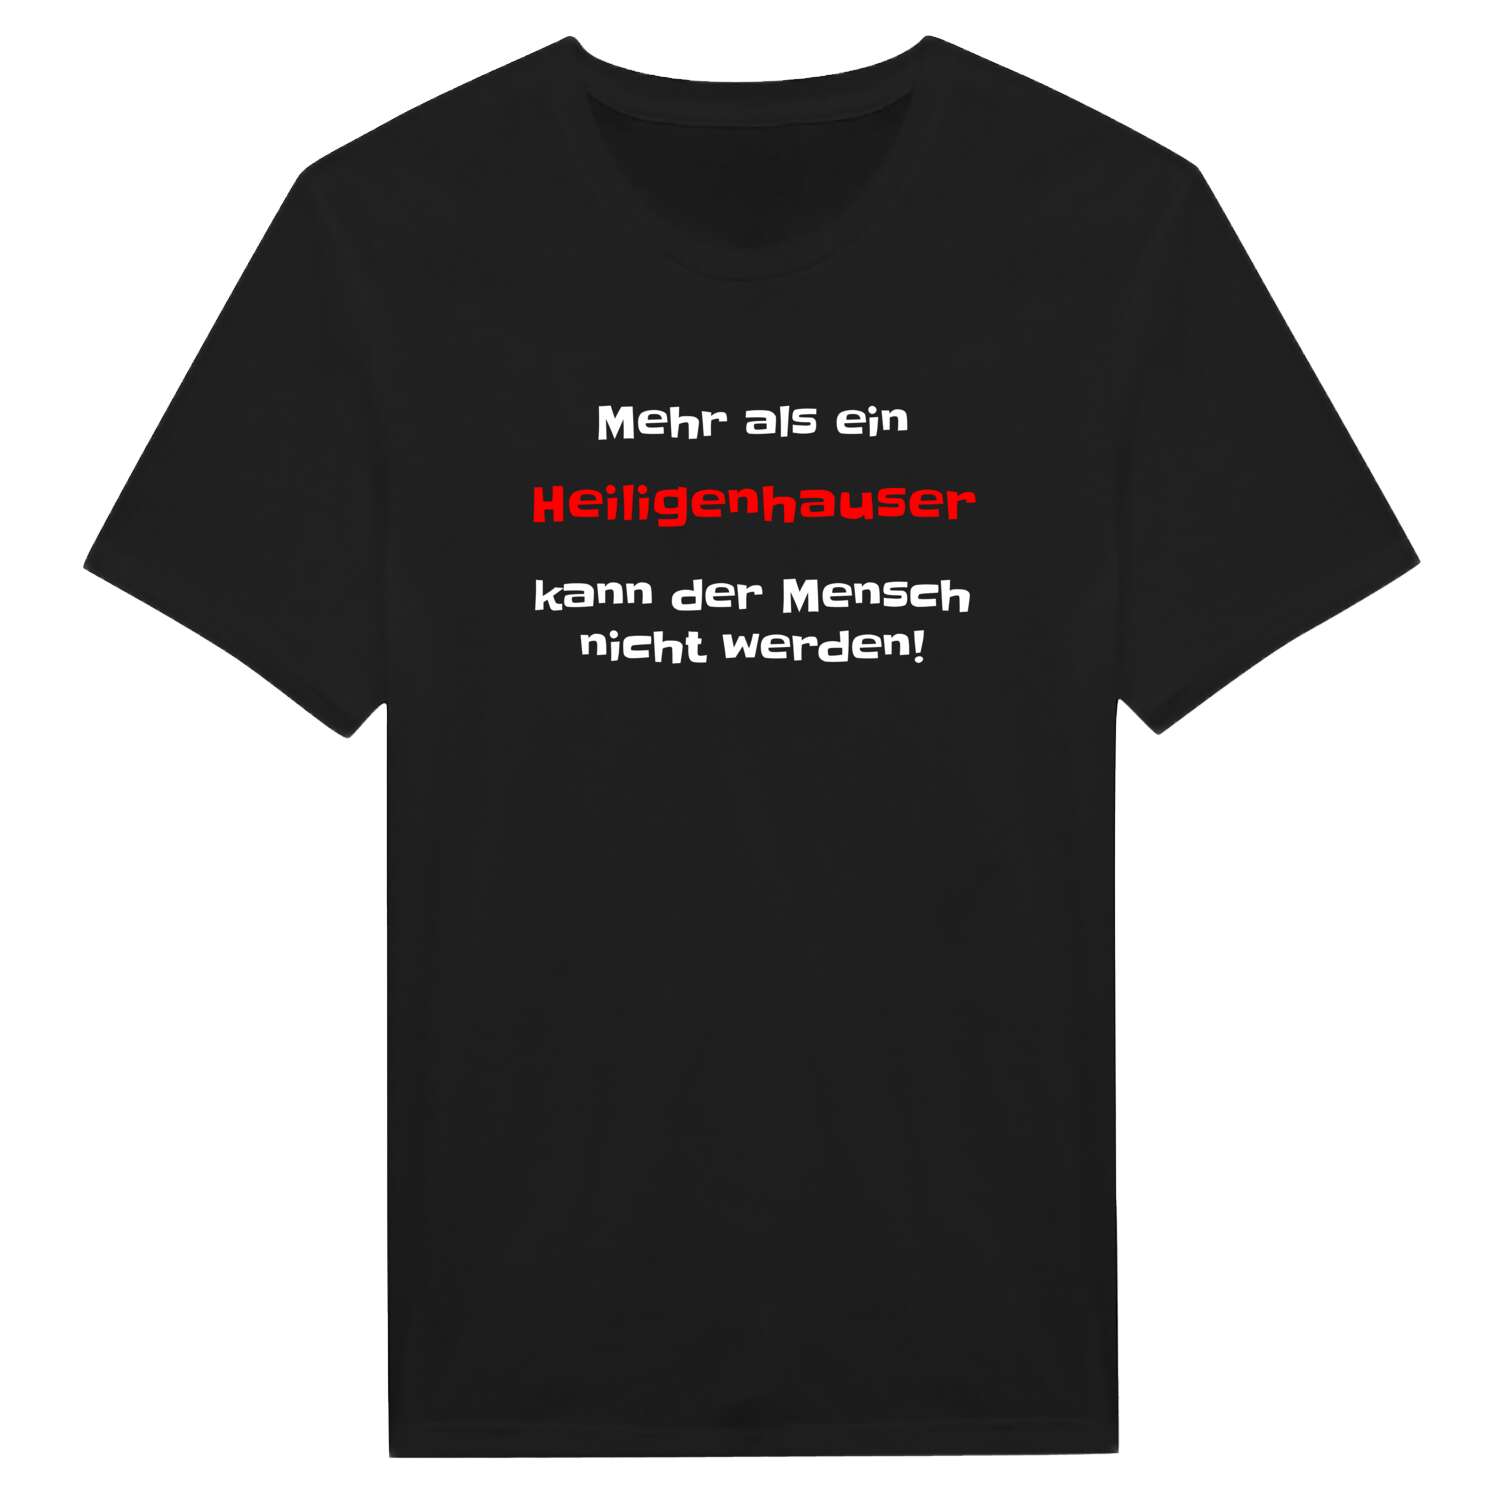 Heiligenhaus T-Shirt »Mehr als ein«